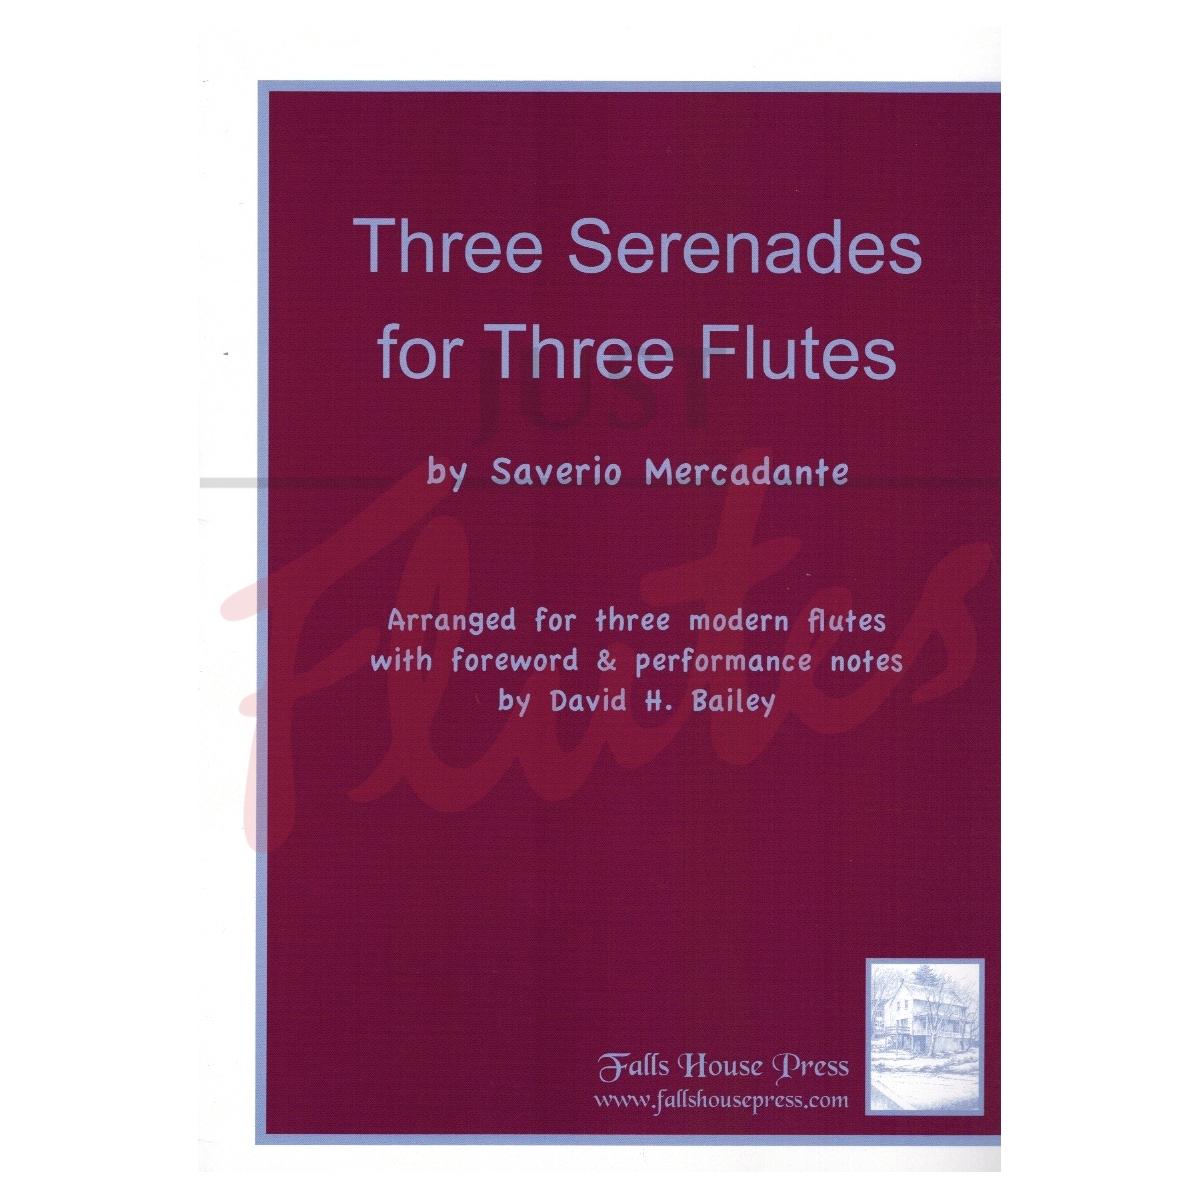 Three Serenades for Three Flutes